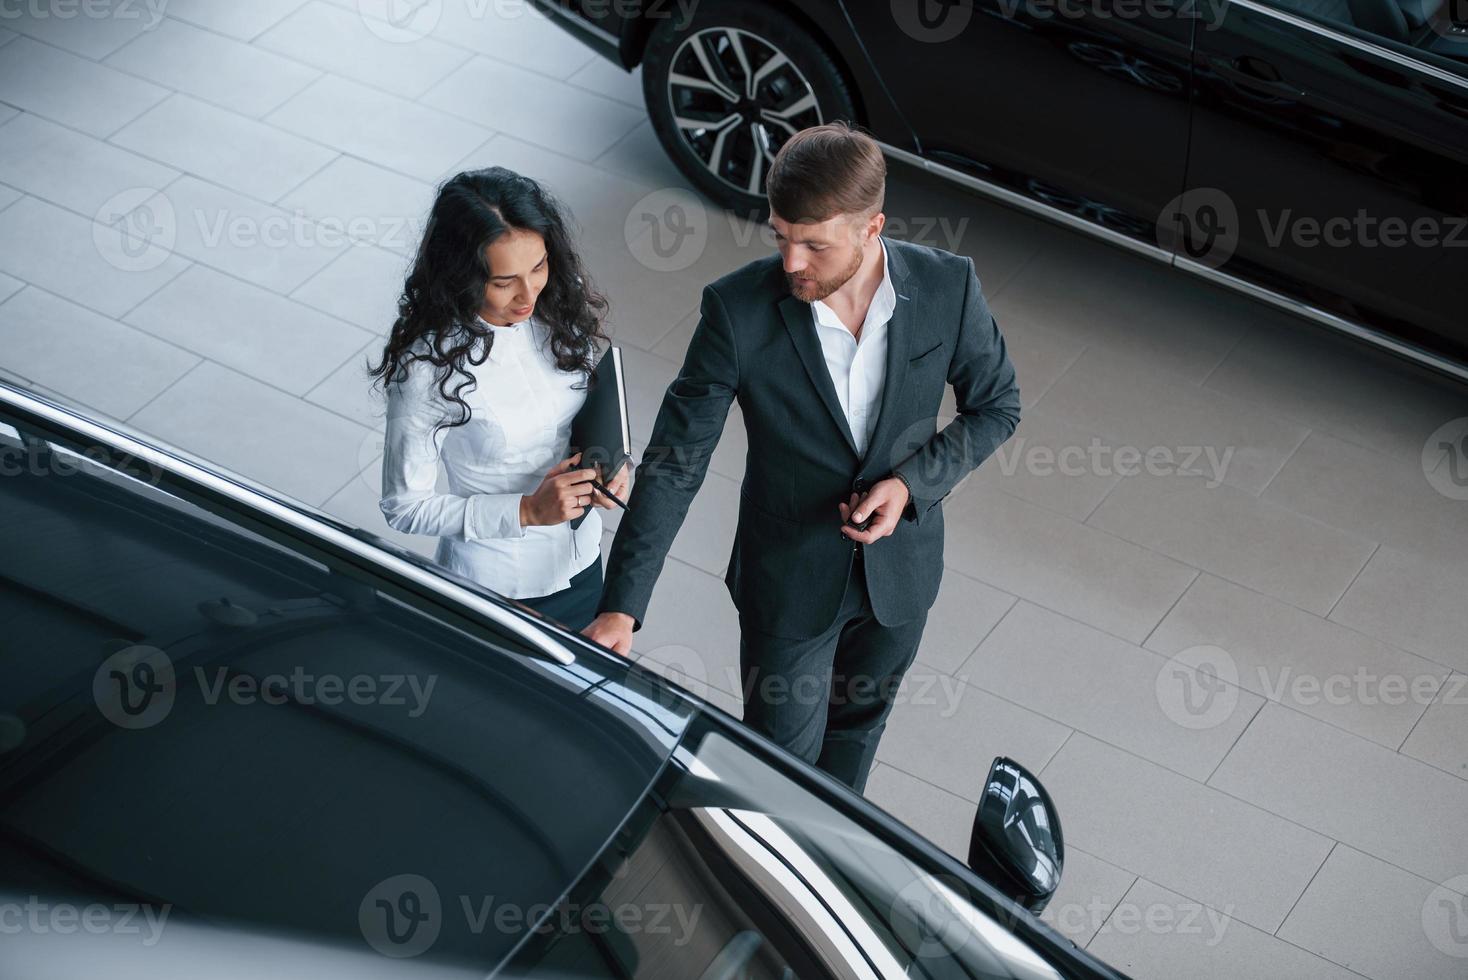 de camino al trabajo. Cliente femenino y moderno y elegante hombre de negocios barbudo en el salón del automóvil foto